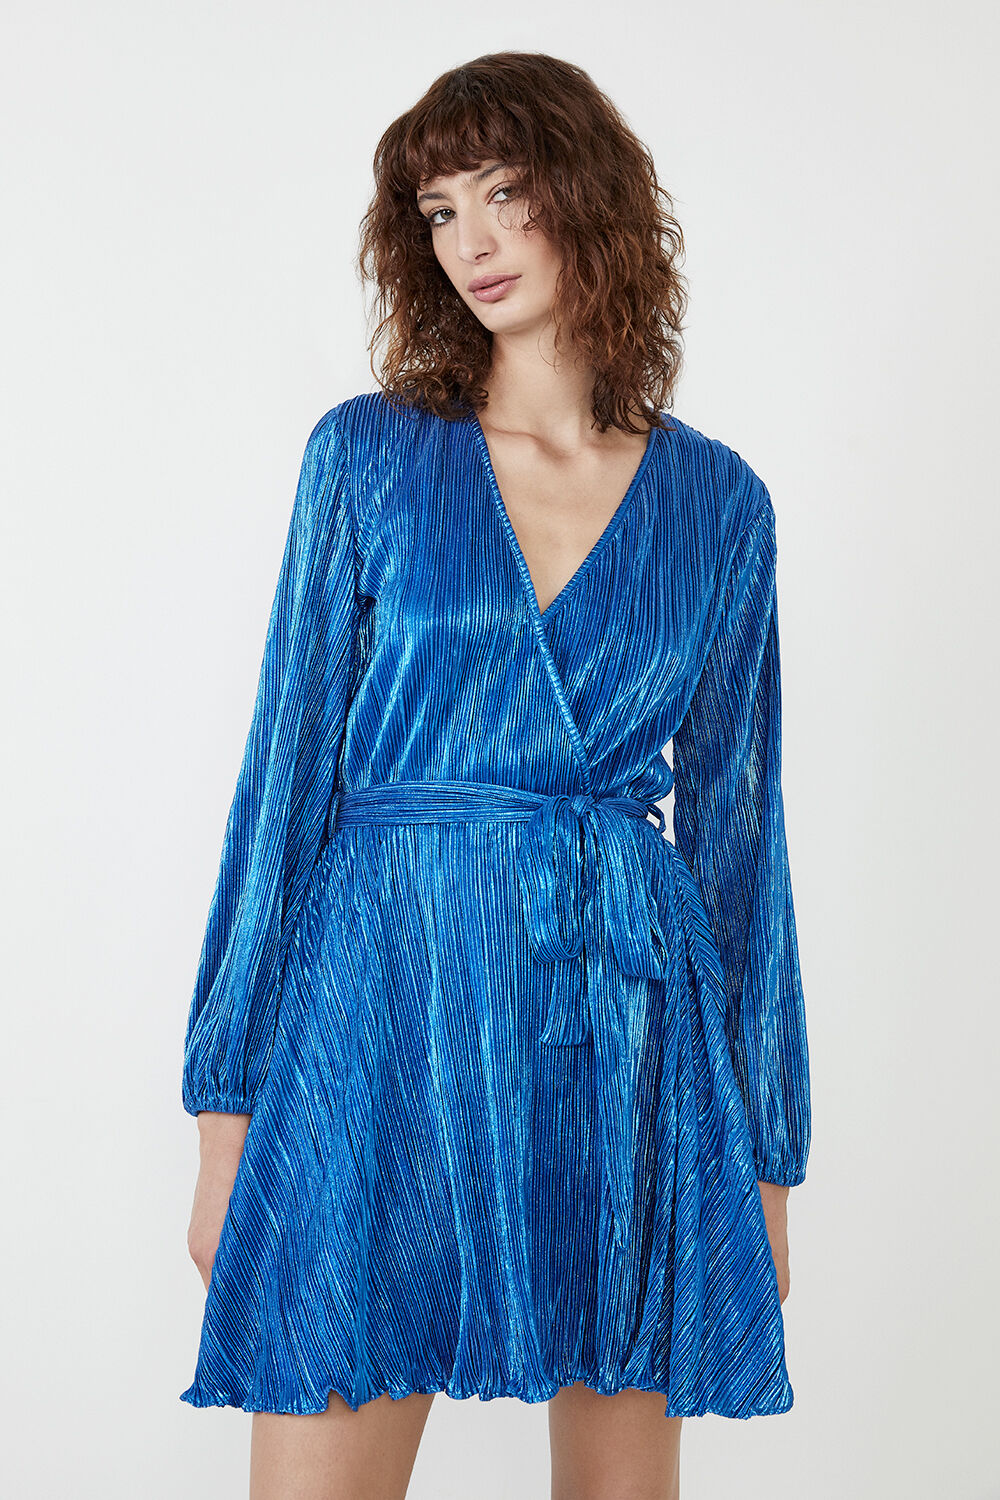 BELLISSA PLEAT DRESS in colour DAZZLING BLUE